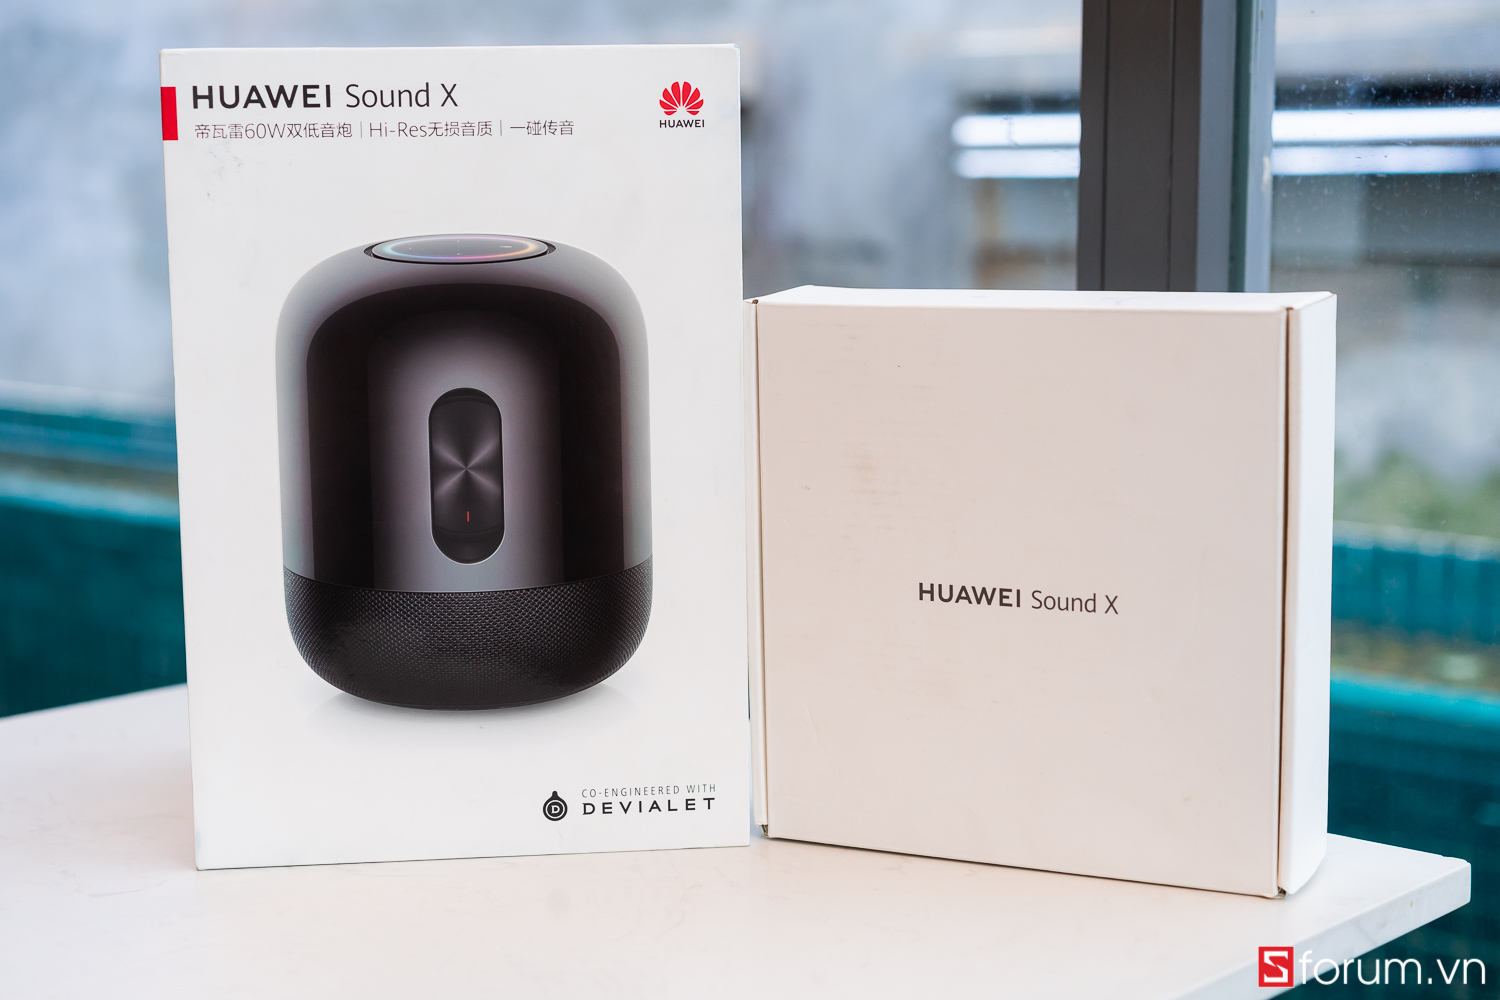 Sforum - Trang thông tin công nghệ mới nhất  Huawei-Sound-X-20 Trên tay Huawei Sound X: Loa thông minh đầu tiên đạt chứng nhận Hi-Res, âm trầm đẳng cấp, thiết kế tinh tế, âm thanh vòm surround 5.1 giá 6,990,000 VNĐ 